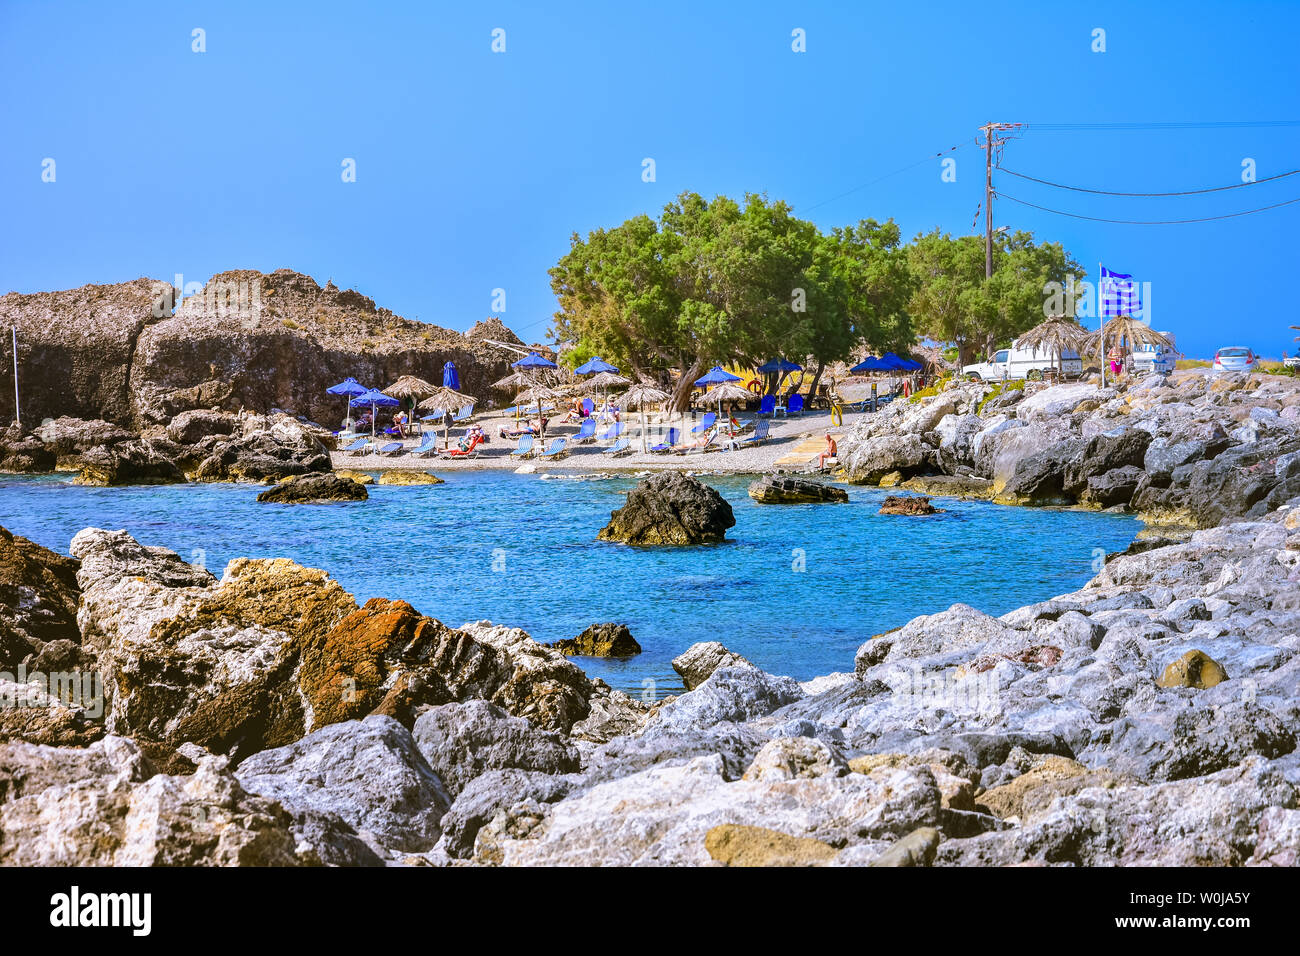 Célèbre plage de sable de Paleochora, Chania, Crète, Grèce Banque D'Images